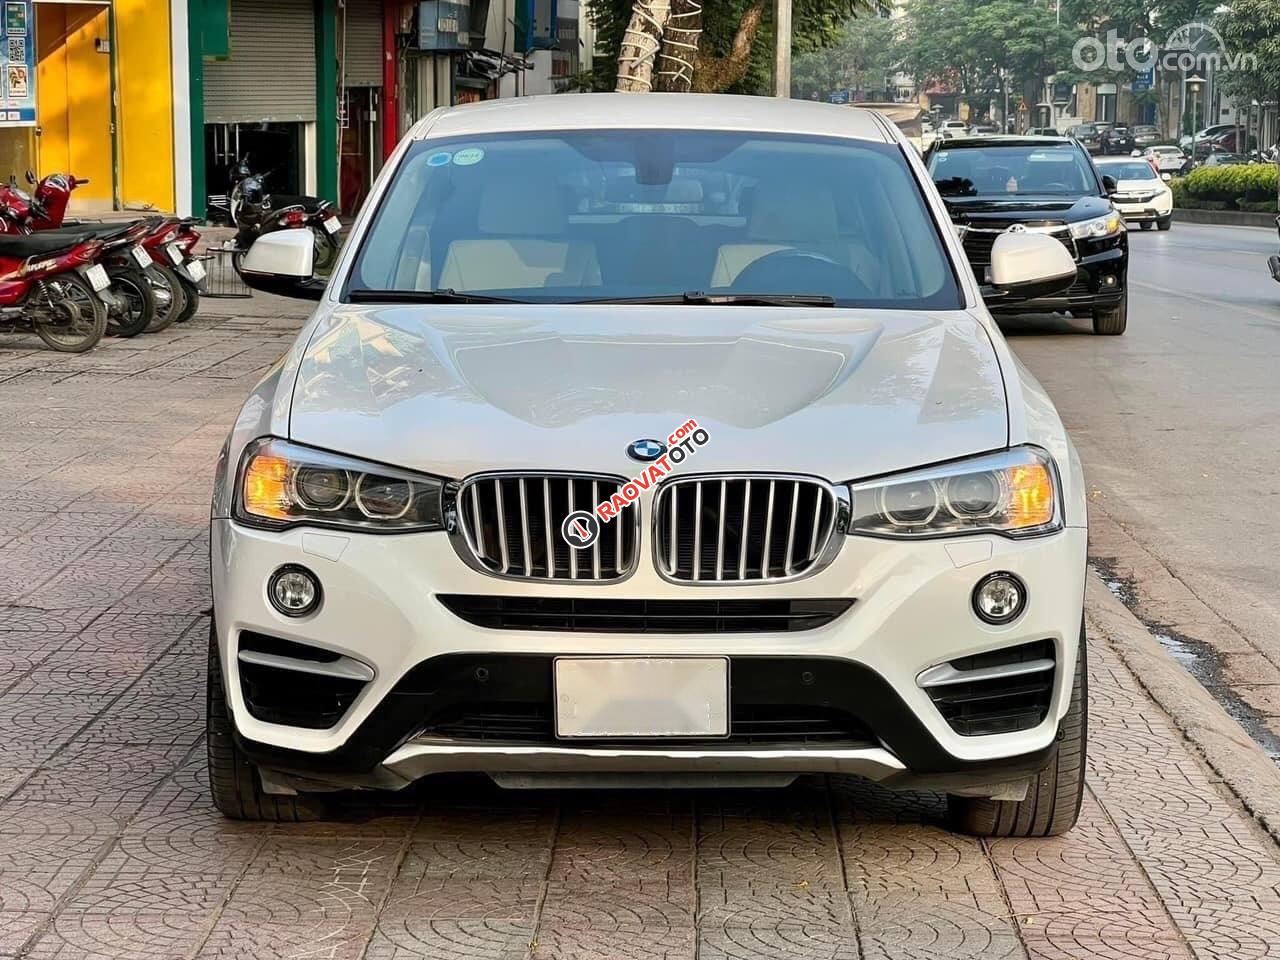 Cần bán BMW X4 sản xuất 2014, xe chính chủ còn rất mới + Tặng gói spa + Hỗ trợ bank-0